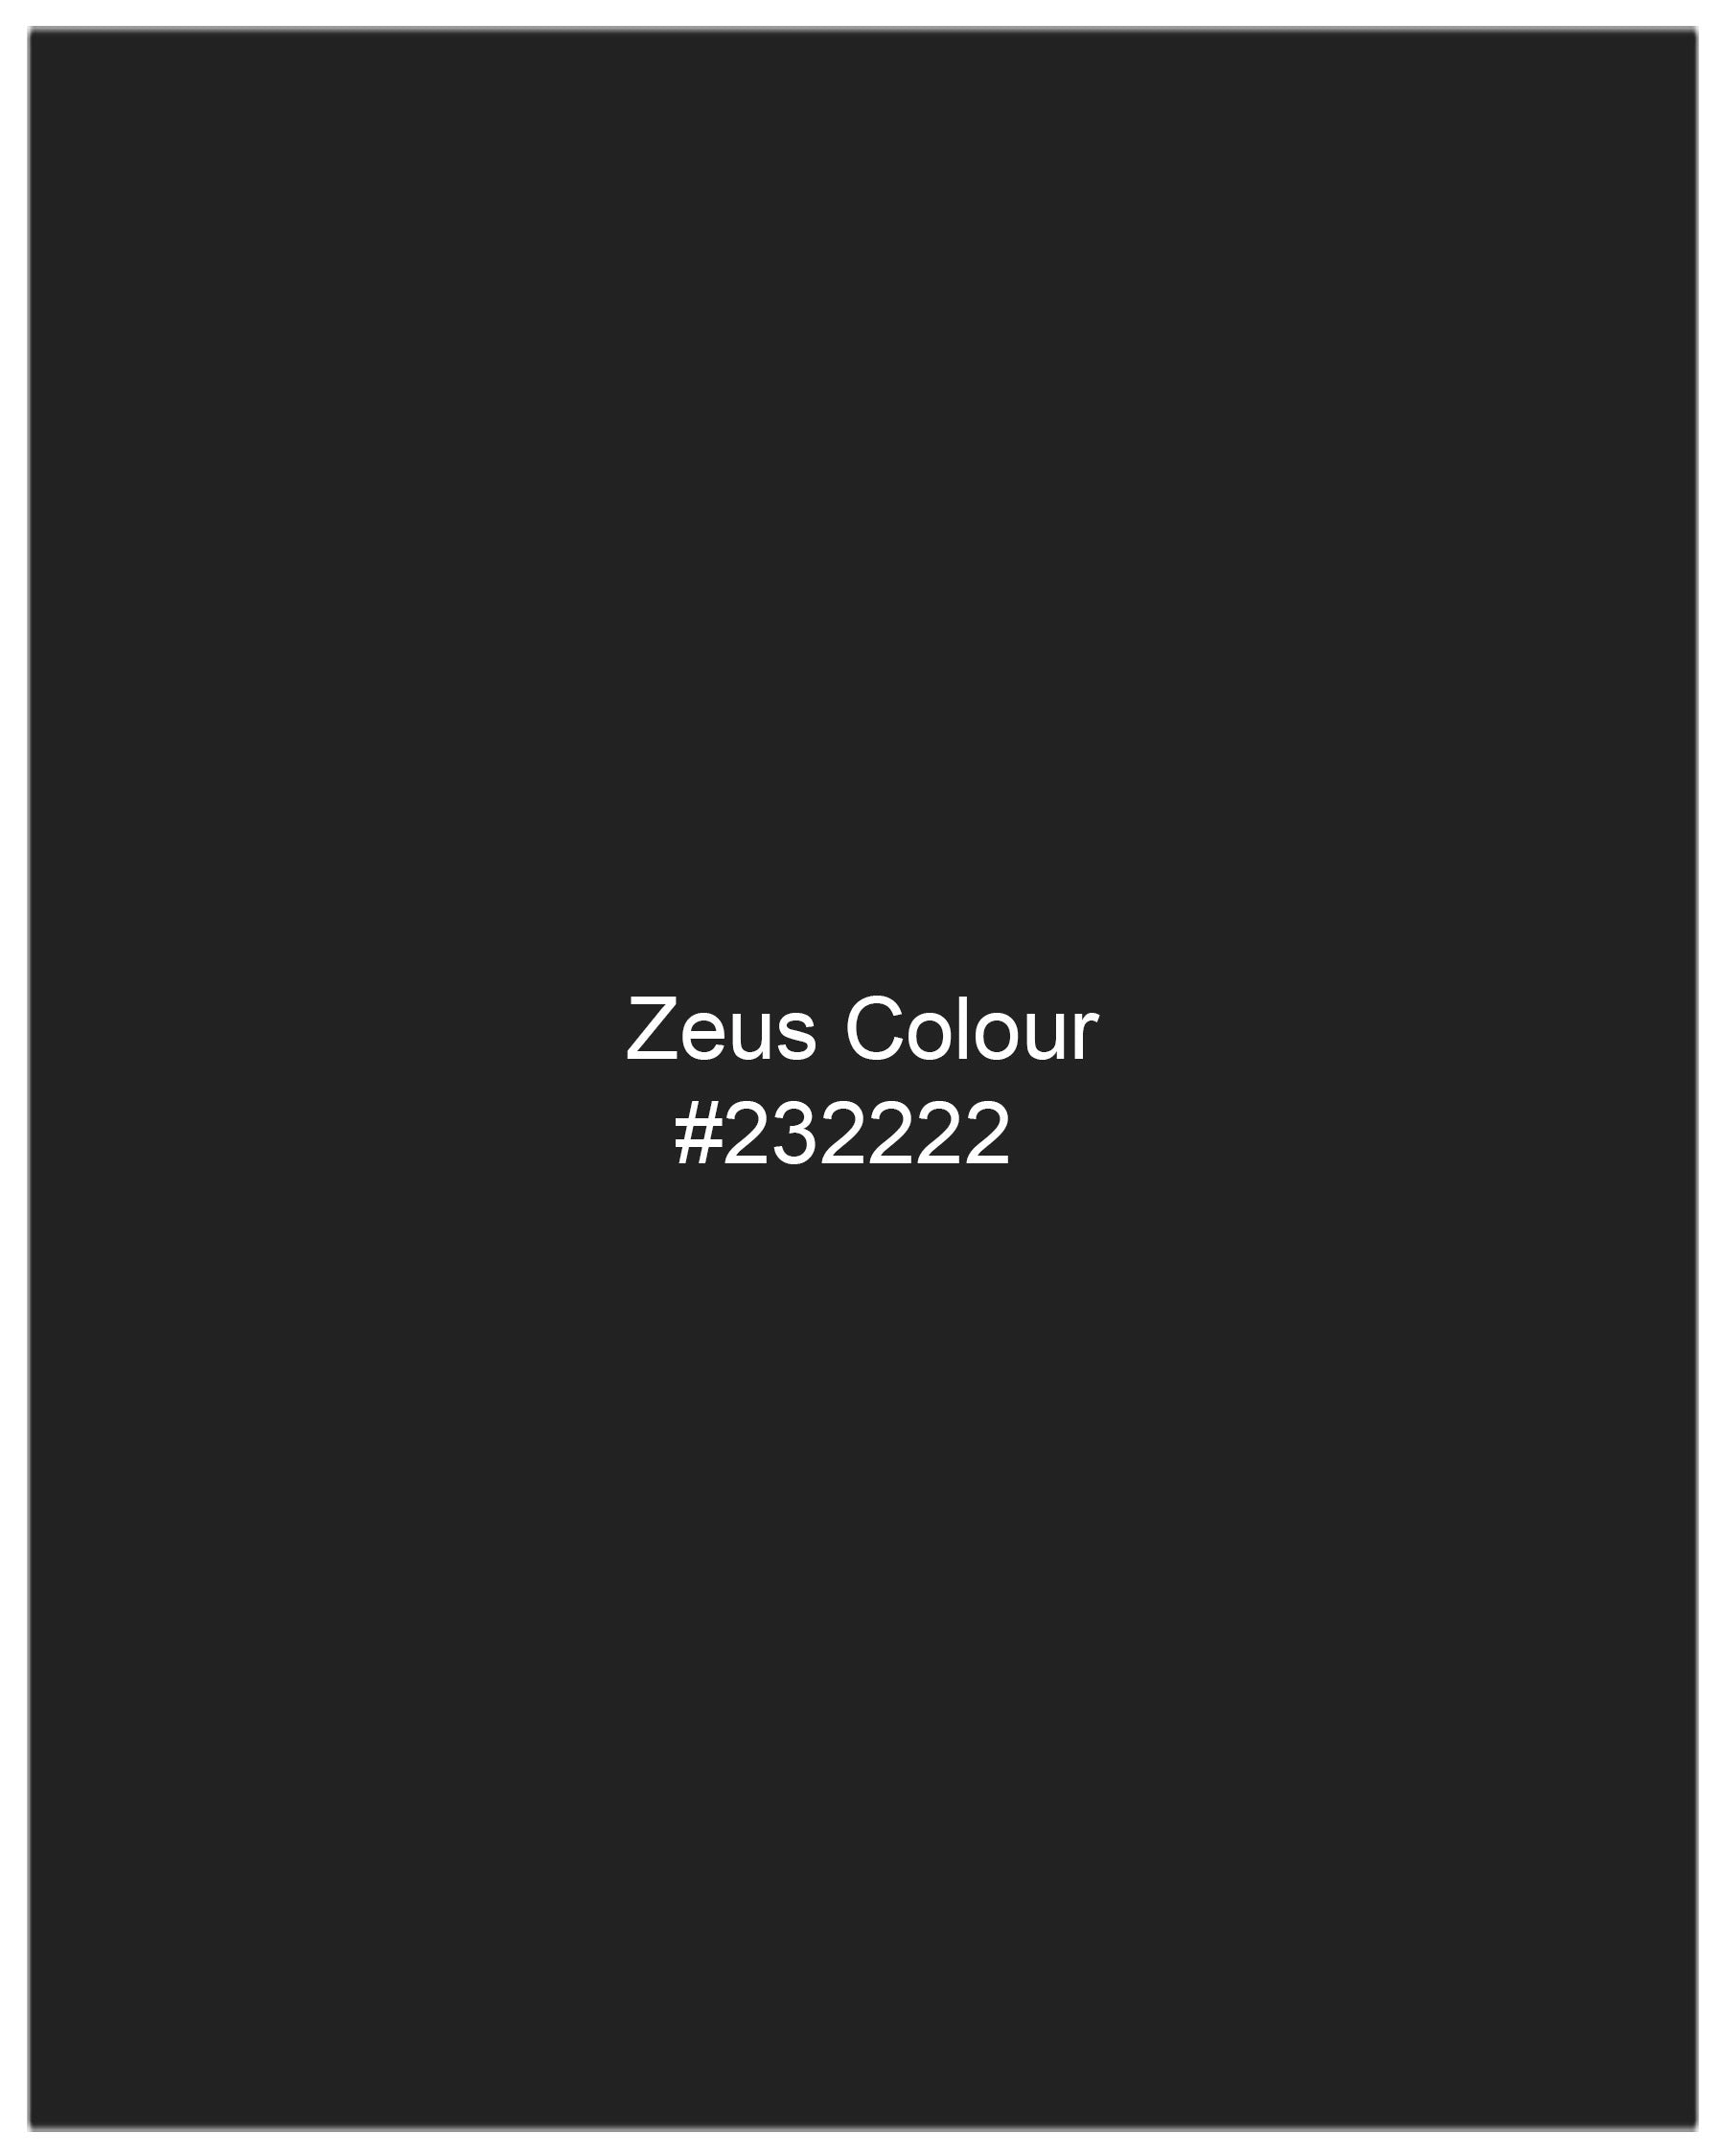 Zeus Black Plaid Waistcoat V2010-36, V2010-38, V2010-40, V2010-42, V2010-44, V2010-46, V2010-48, V2010-50, V2010-52, V2010-54, V2010-56, V2010-58, V2010-60